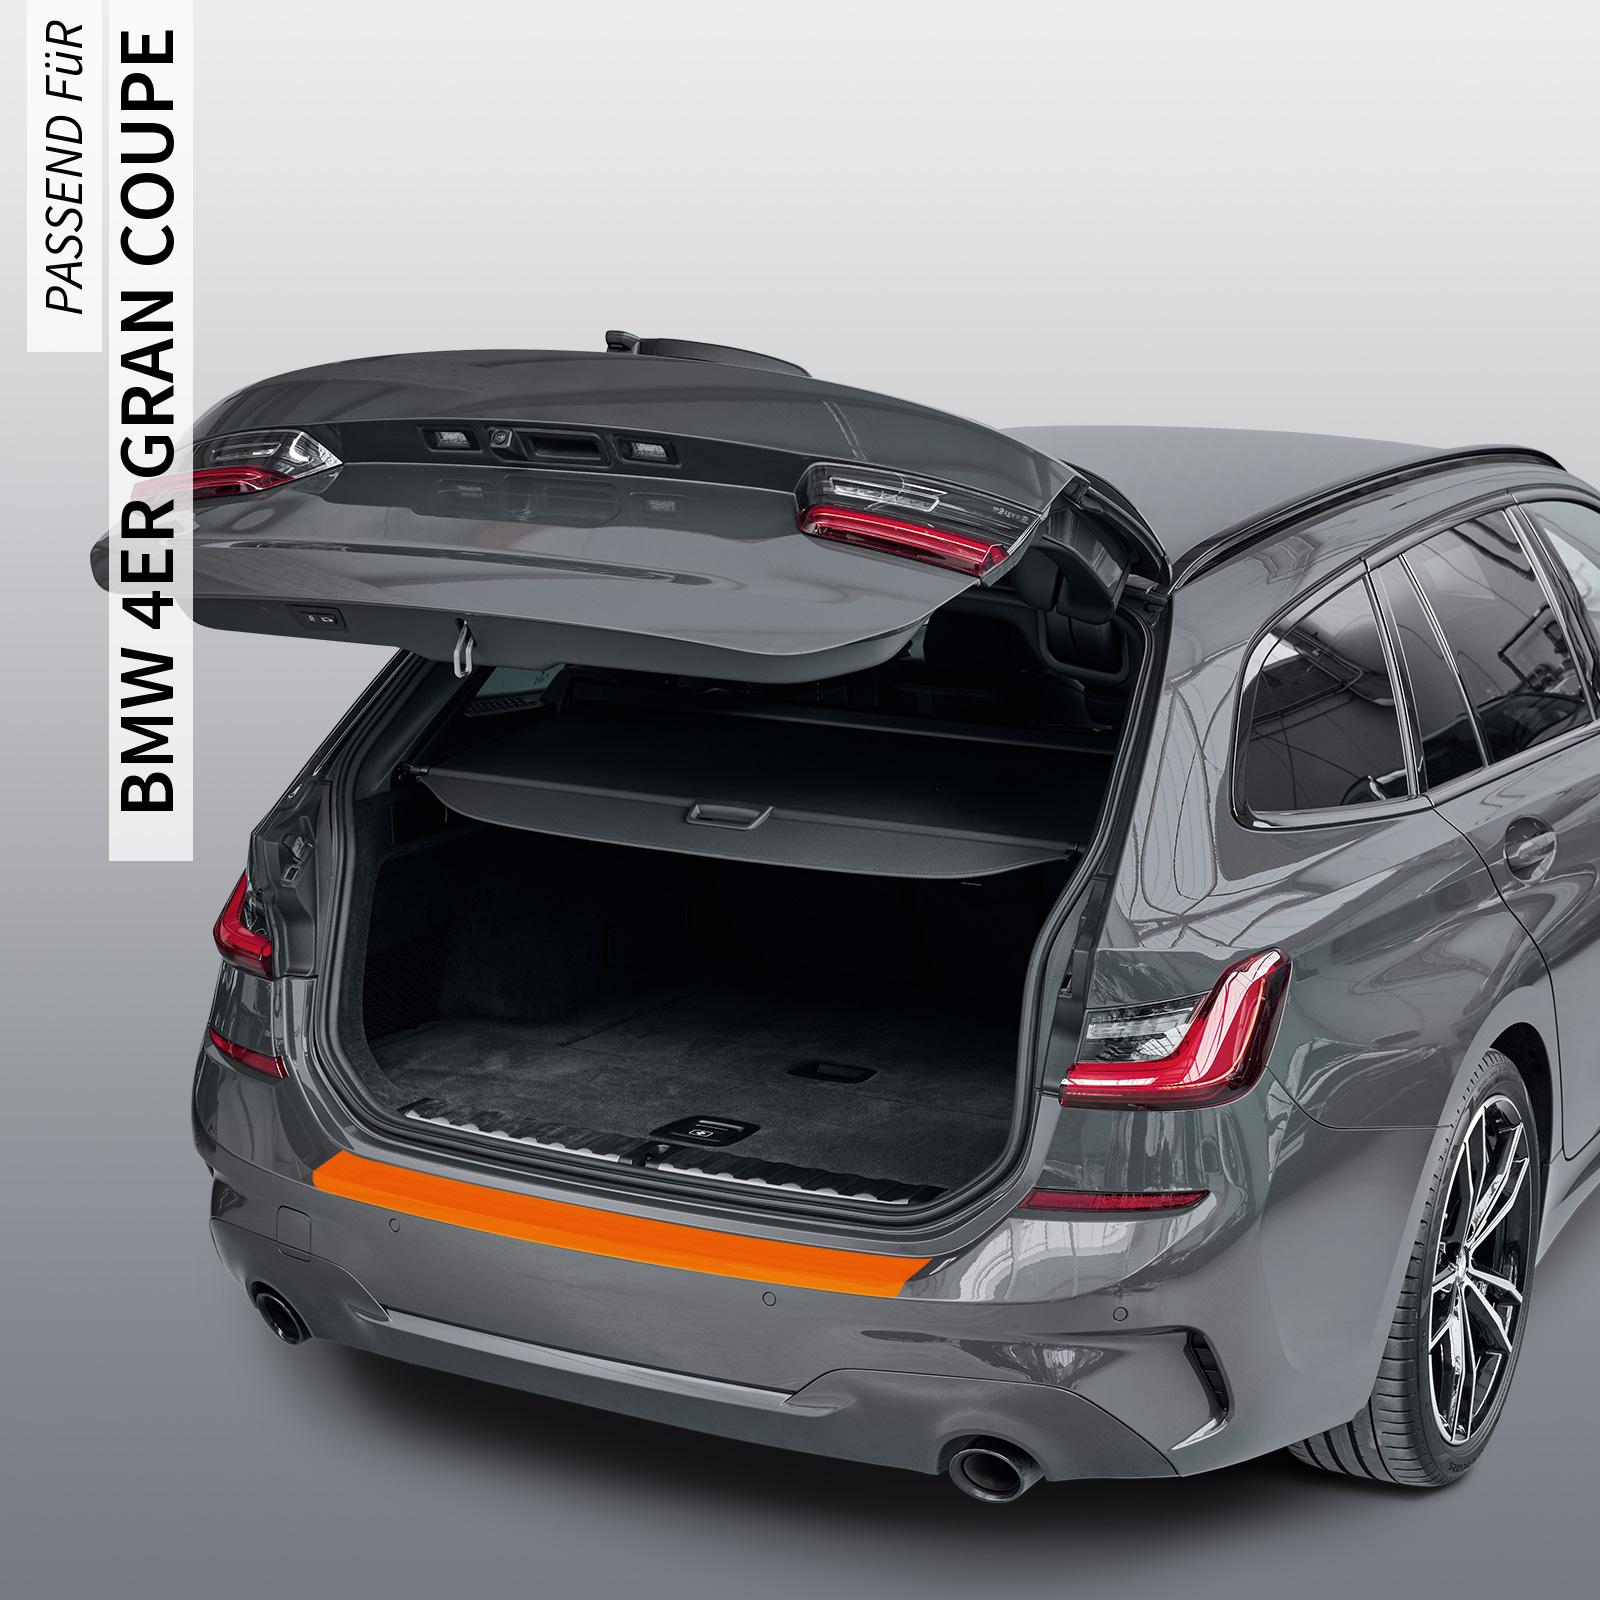 Ladekantenschutzfolie - Transparent Glatt Hochglänzend 150 µm stark für BMW 4er Gran Coupe Typ F36, BJ 2014-10/2021